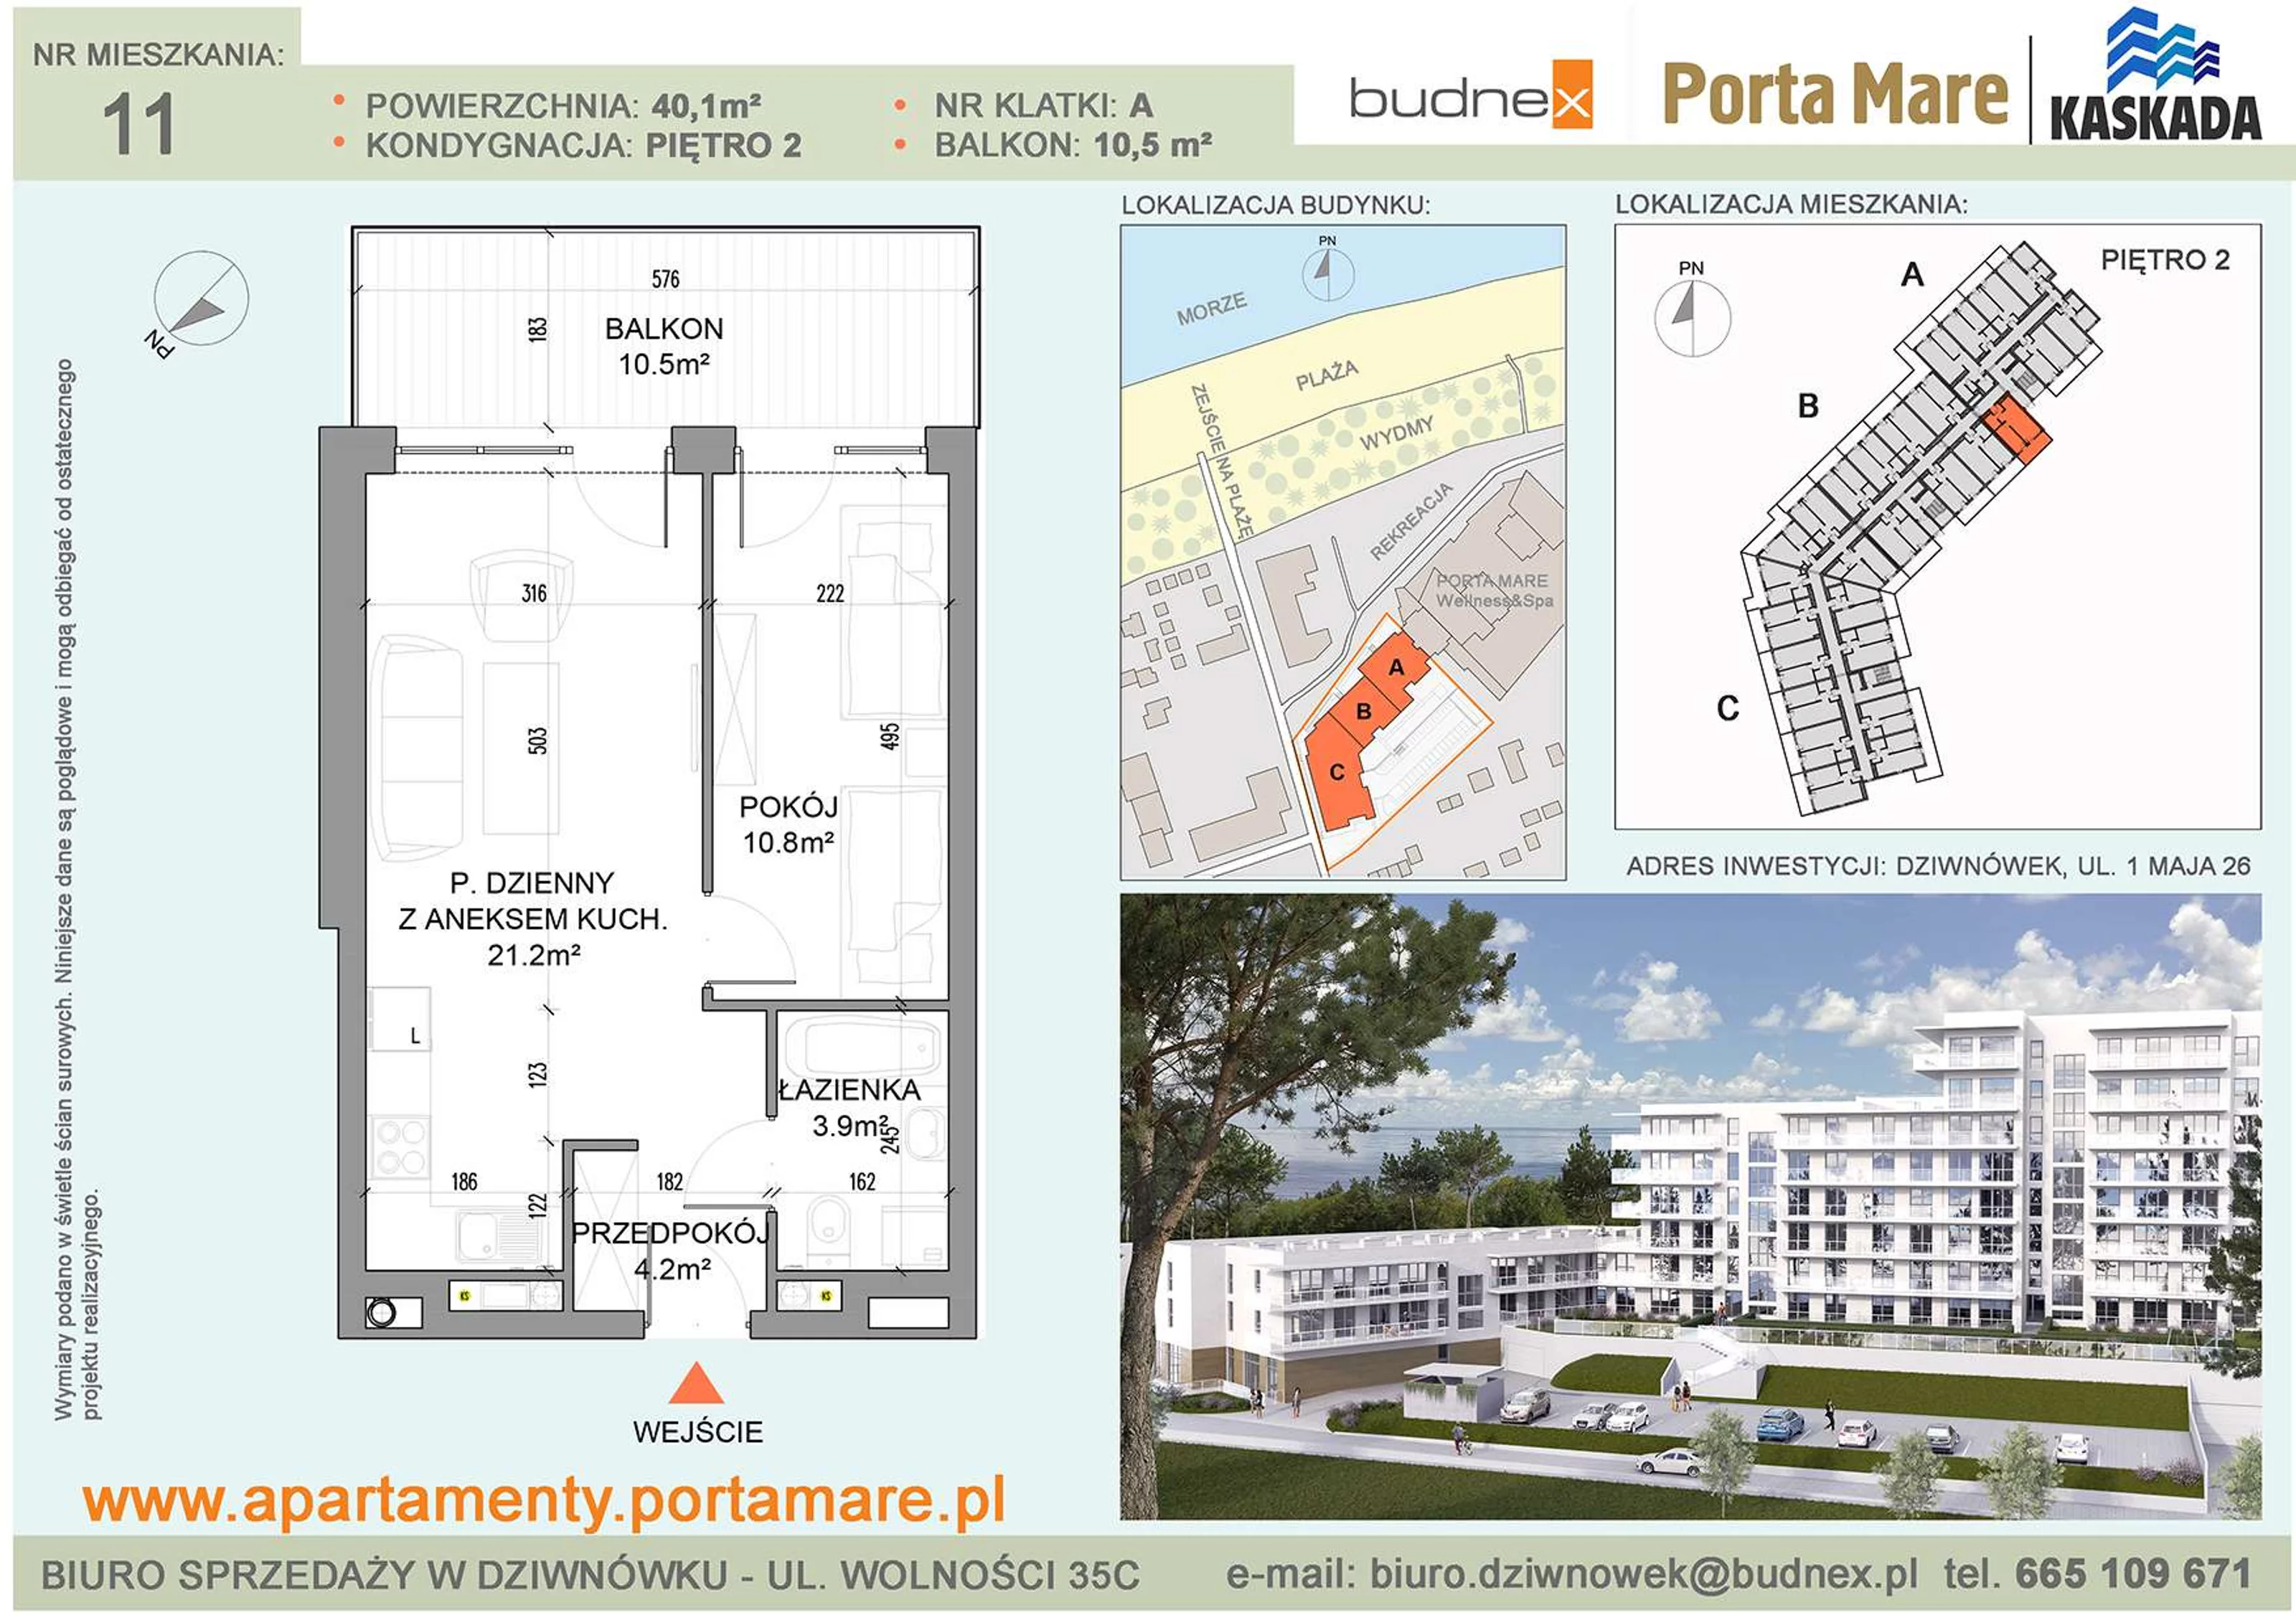 Mieszkanie 40,10 m², piętro 2, oferta nr A/M11, Porta Mare Kaskada, Dziwnówek, ul. 1 Maja 26